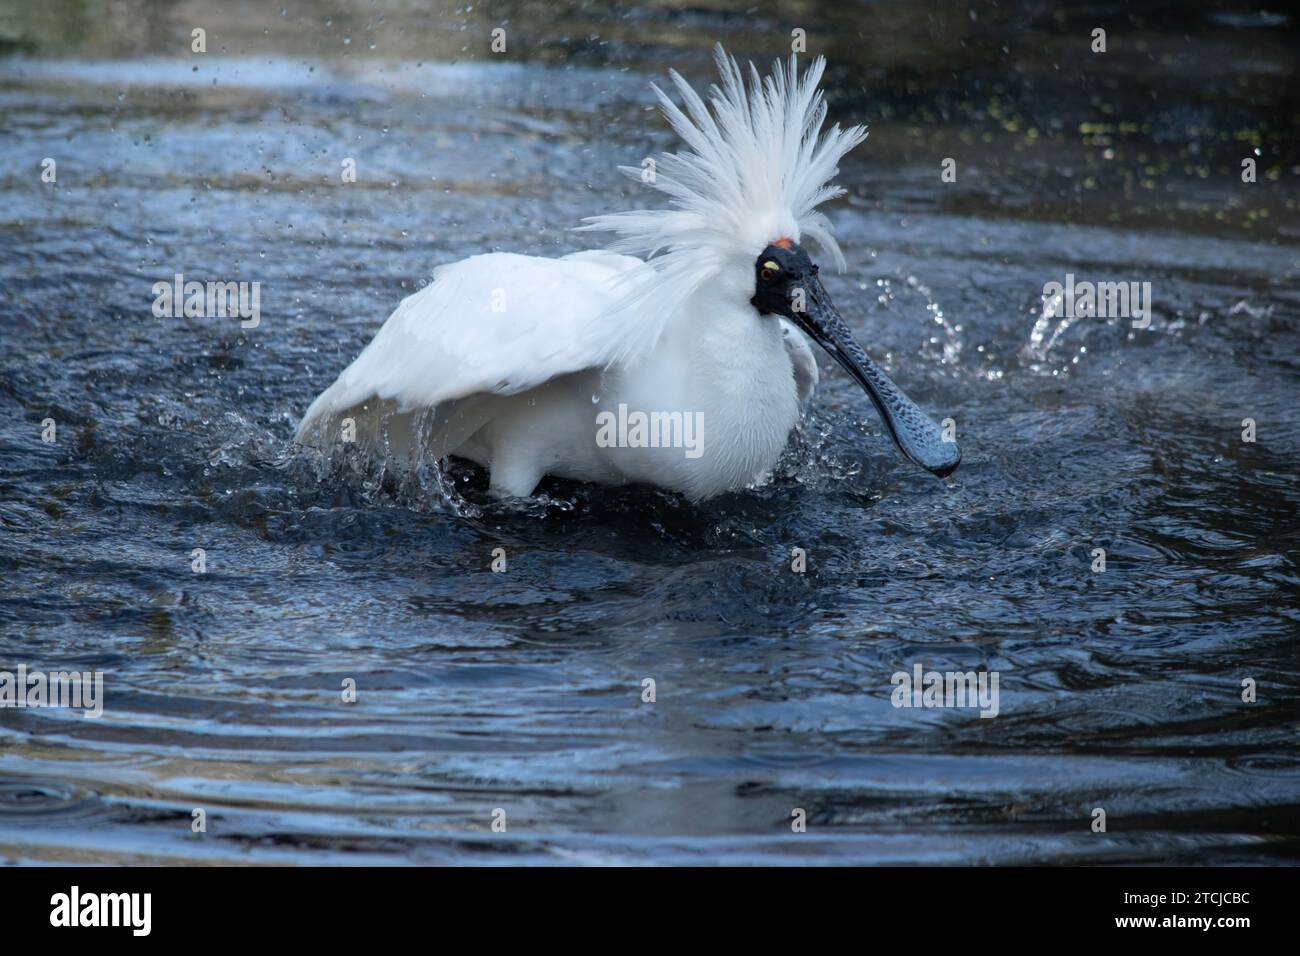 Der königliche Löffel ist ein großer weißer Seevogel mit einem schwarzen Schirm, der wie ein Löffel aussieht. Der königliche Löffel hat gelbe Augenbrauen und schwarze Beine Stockfoto